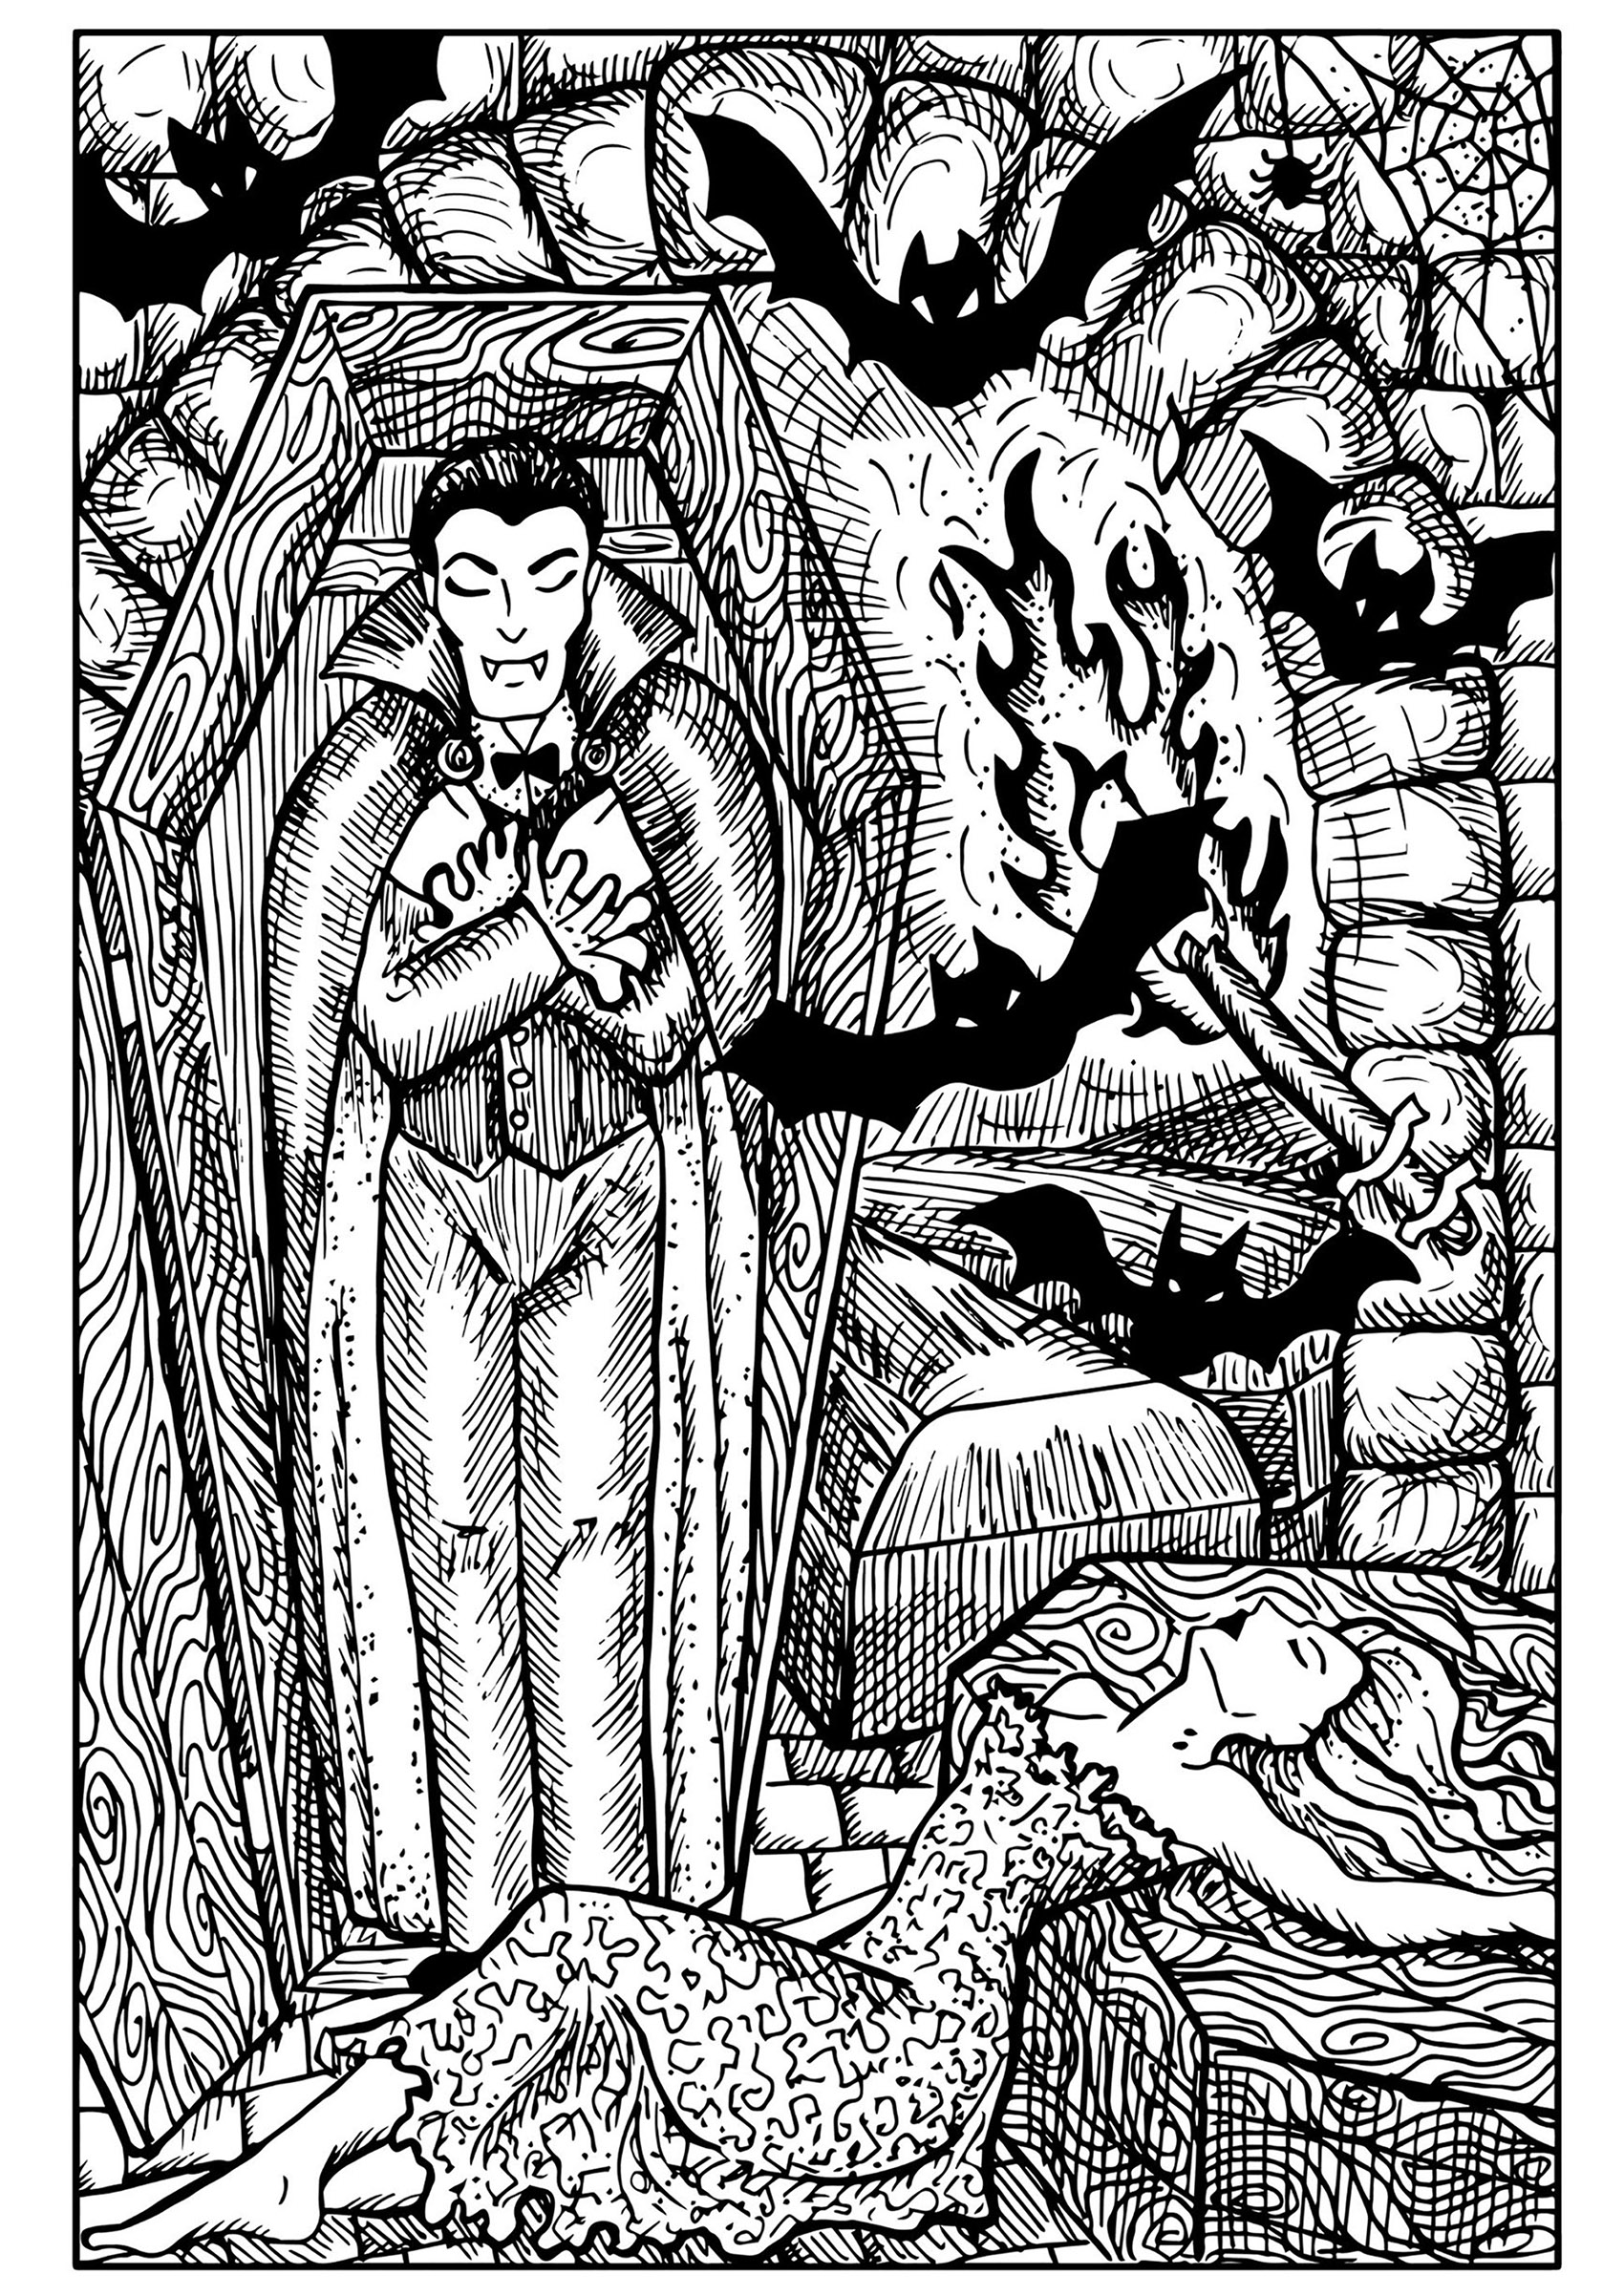 Vampiro en ataúd, murciélagos y mujer mordida. Un montón de detalles en esta espeluznante página para colorear de Halloween